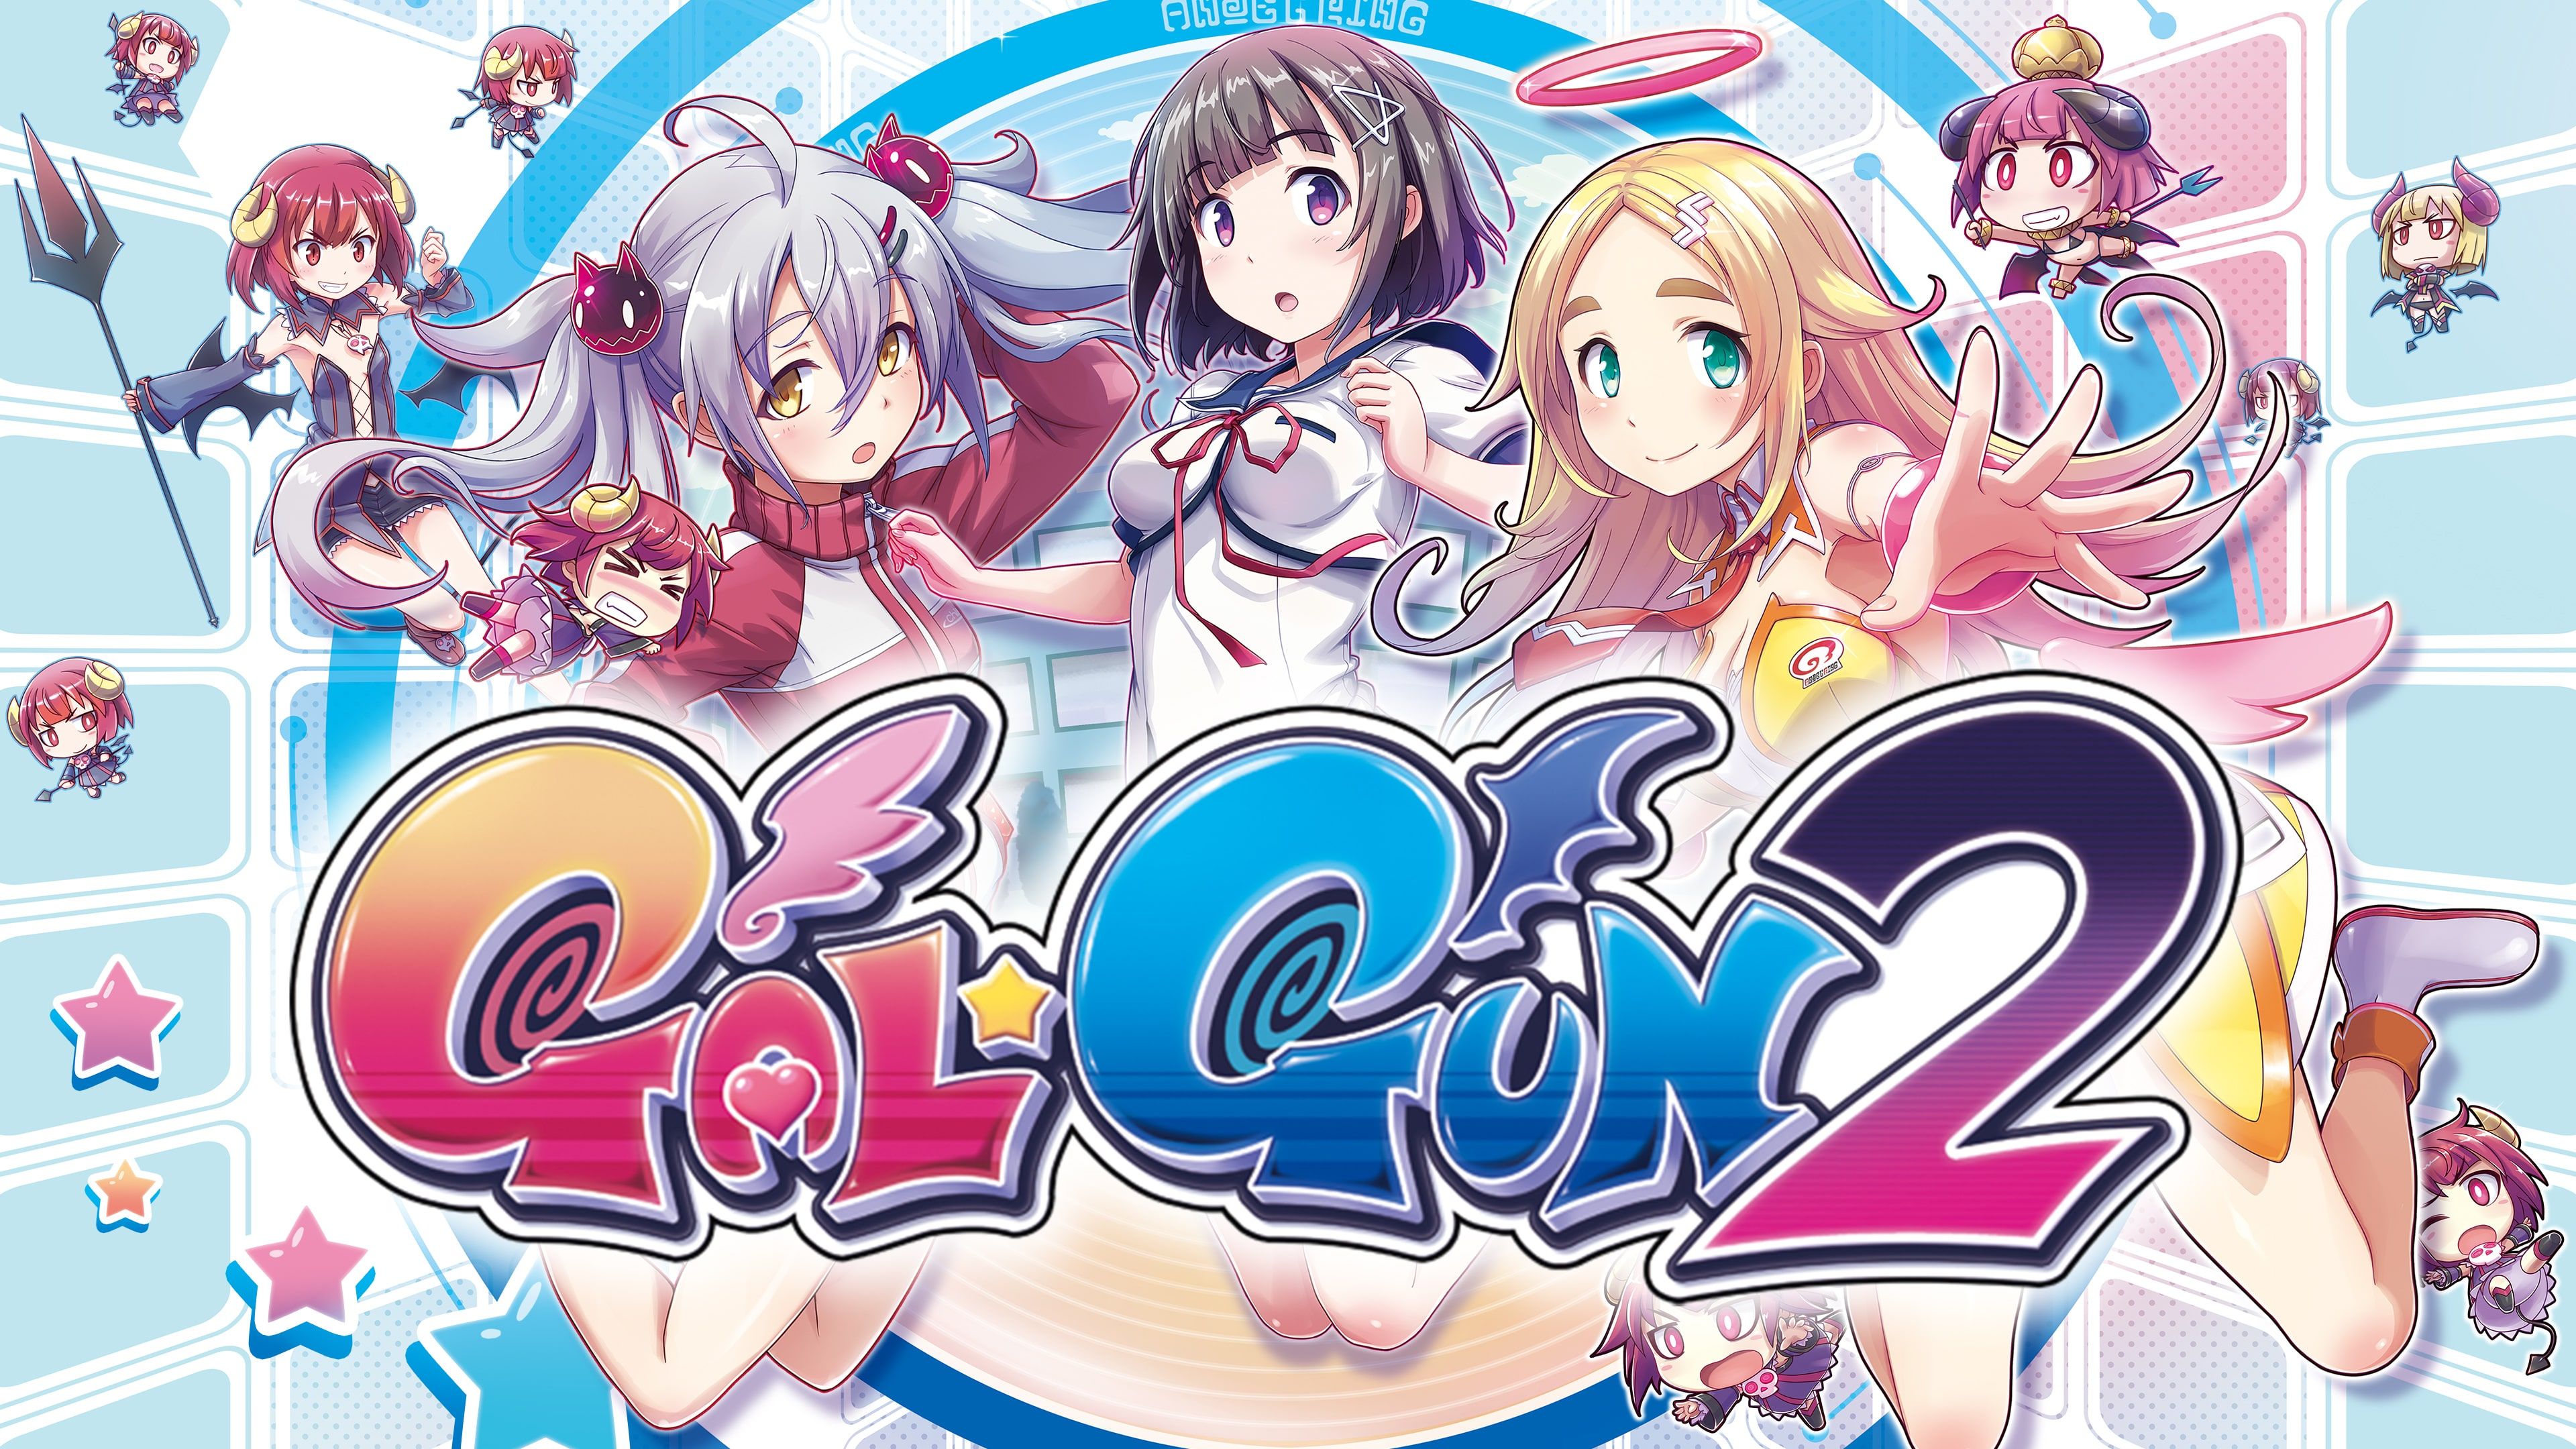 Gal*Gun 2 cover image